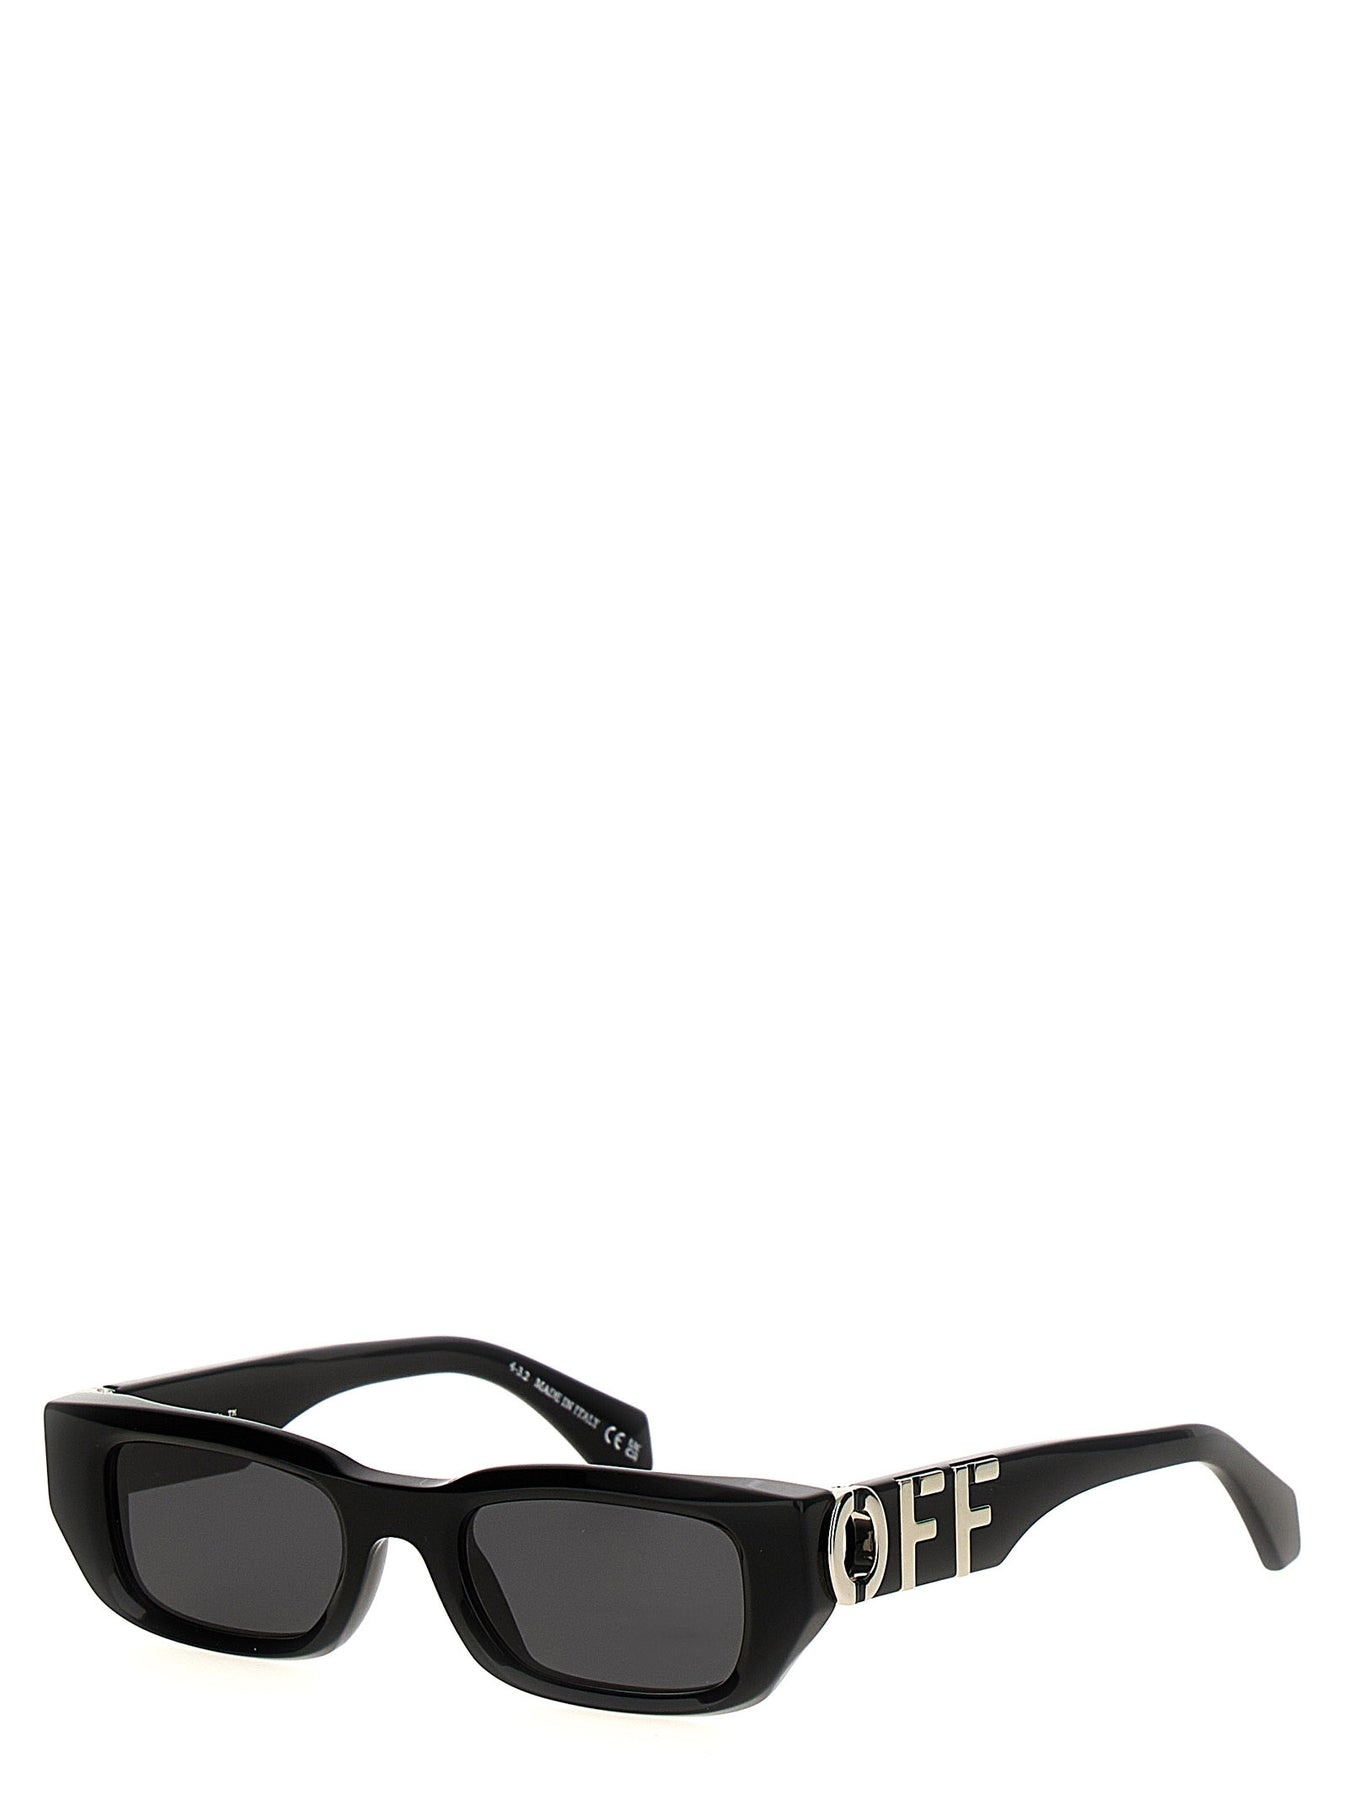 Fillmore Sunglasses Black - 3